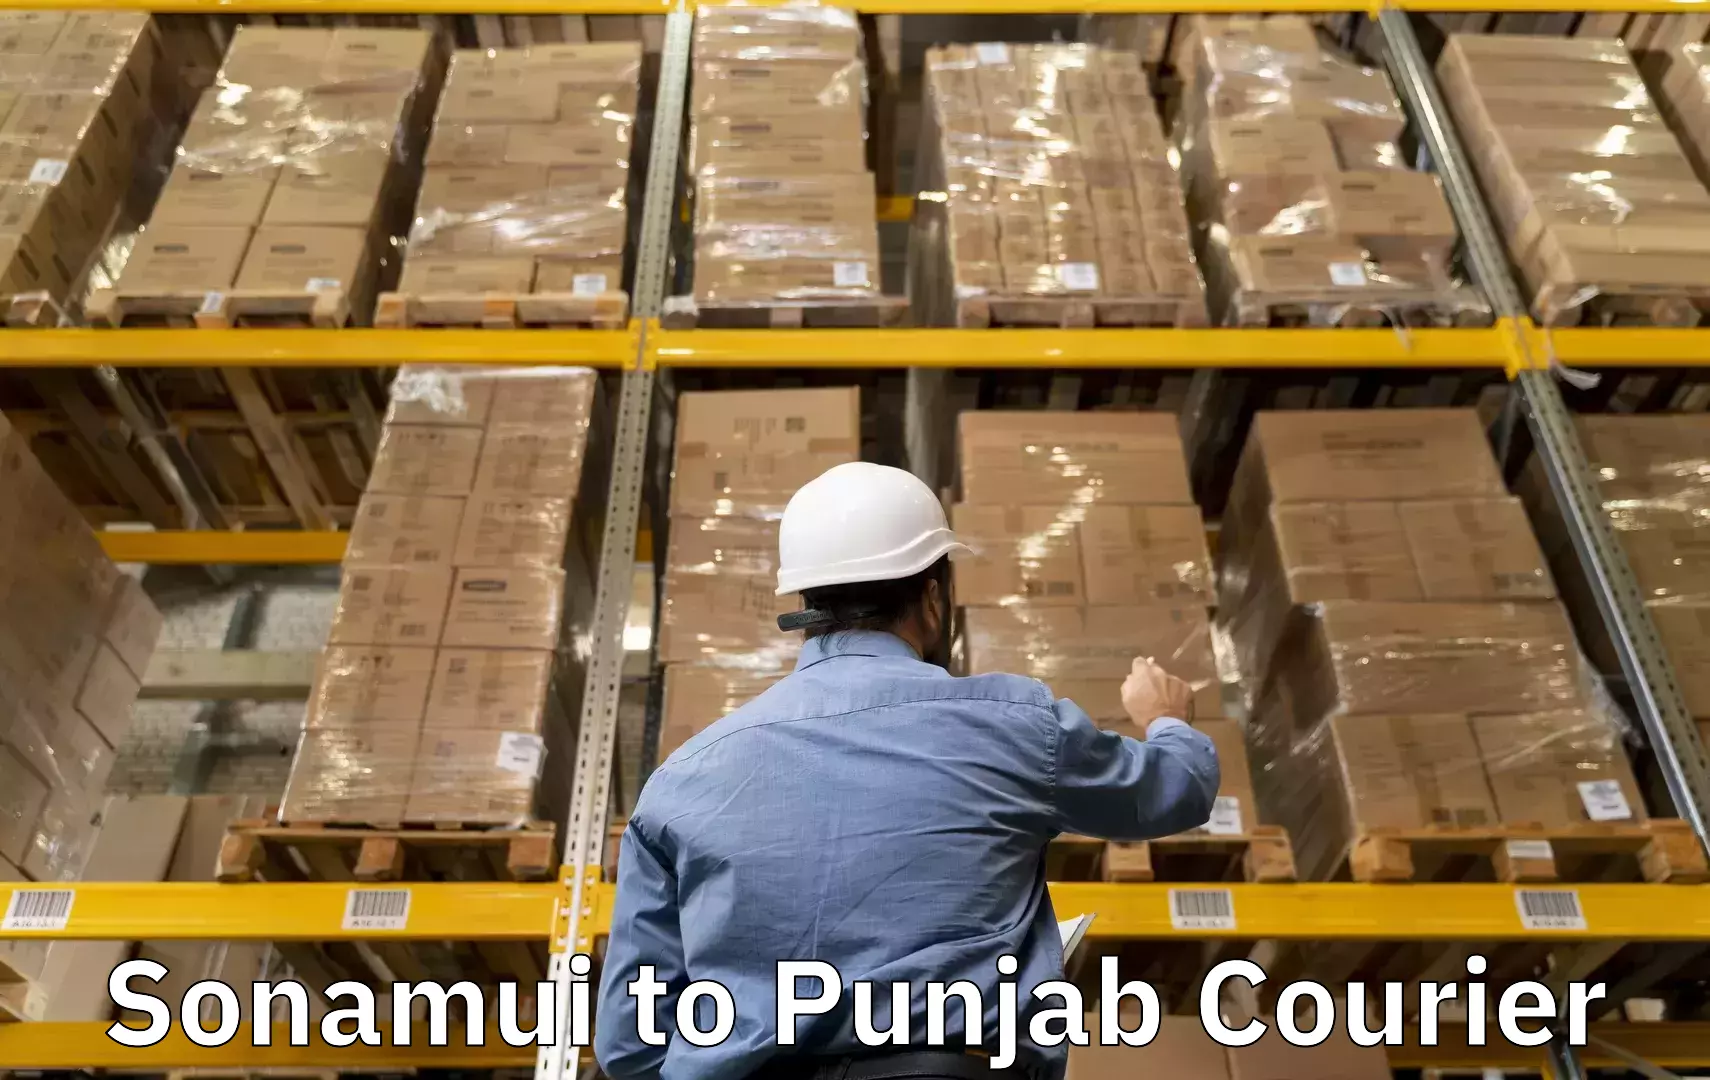 Nationwide luggage courier Sonamui to Punjab